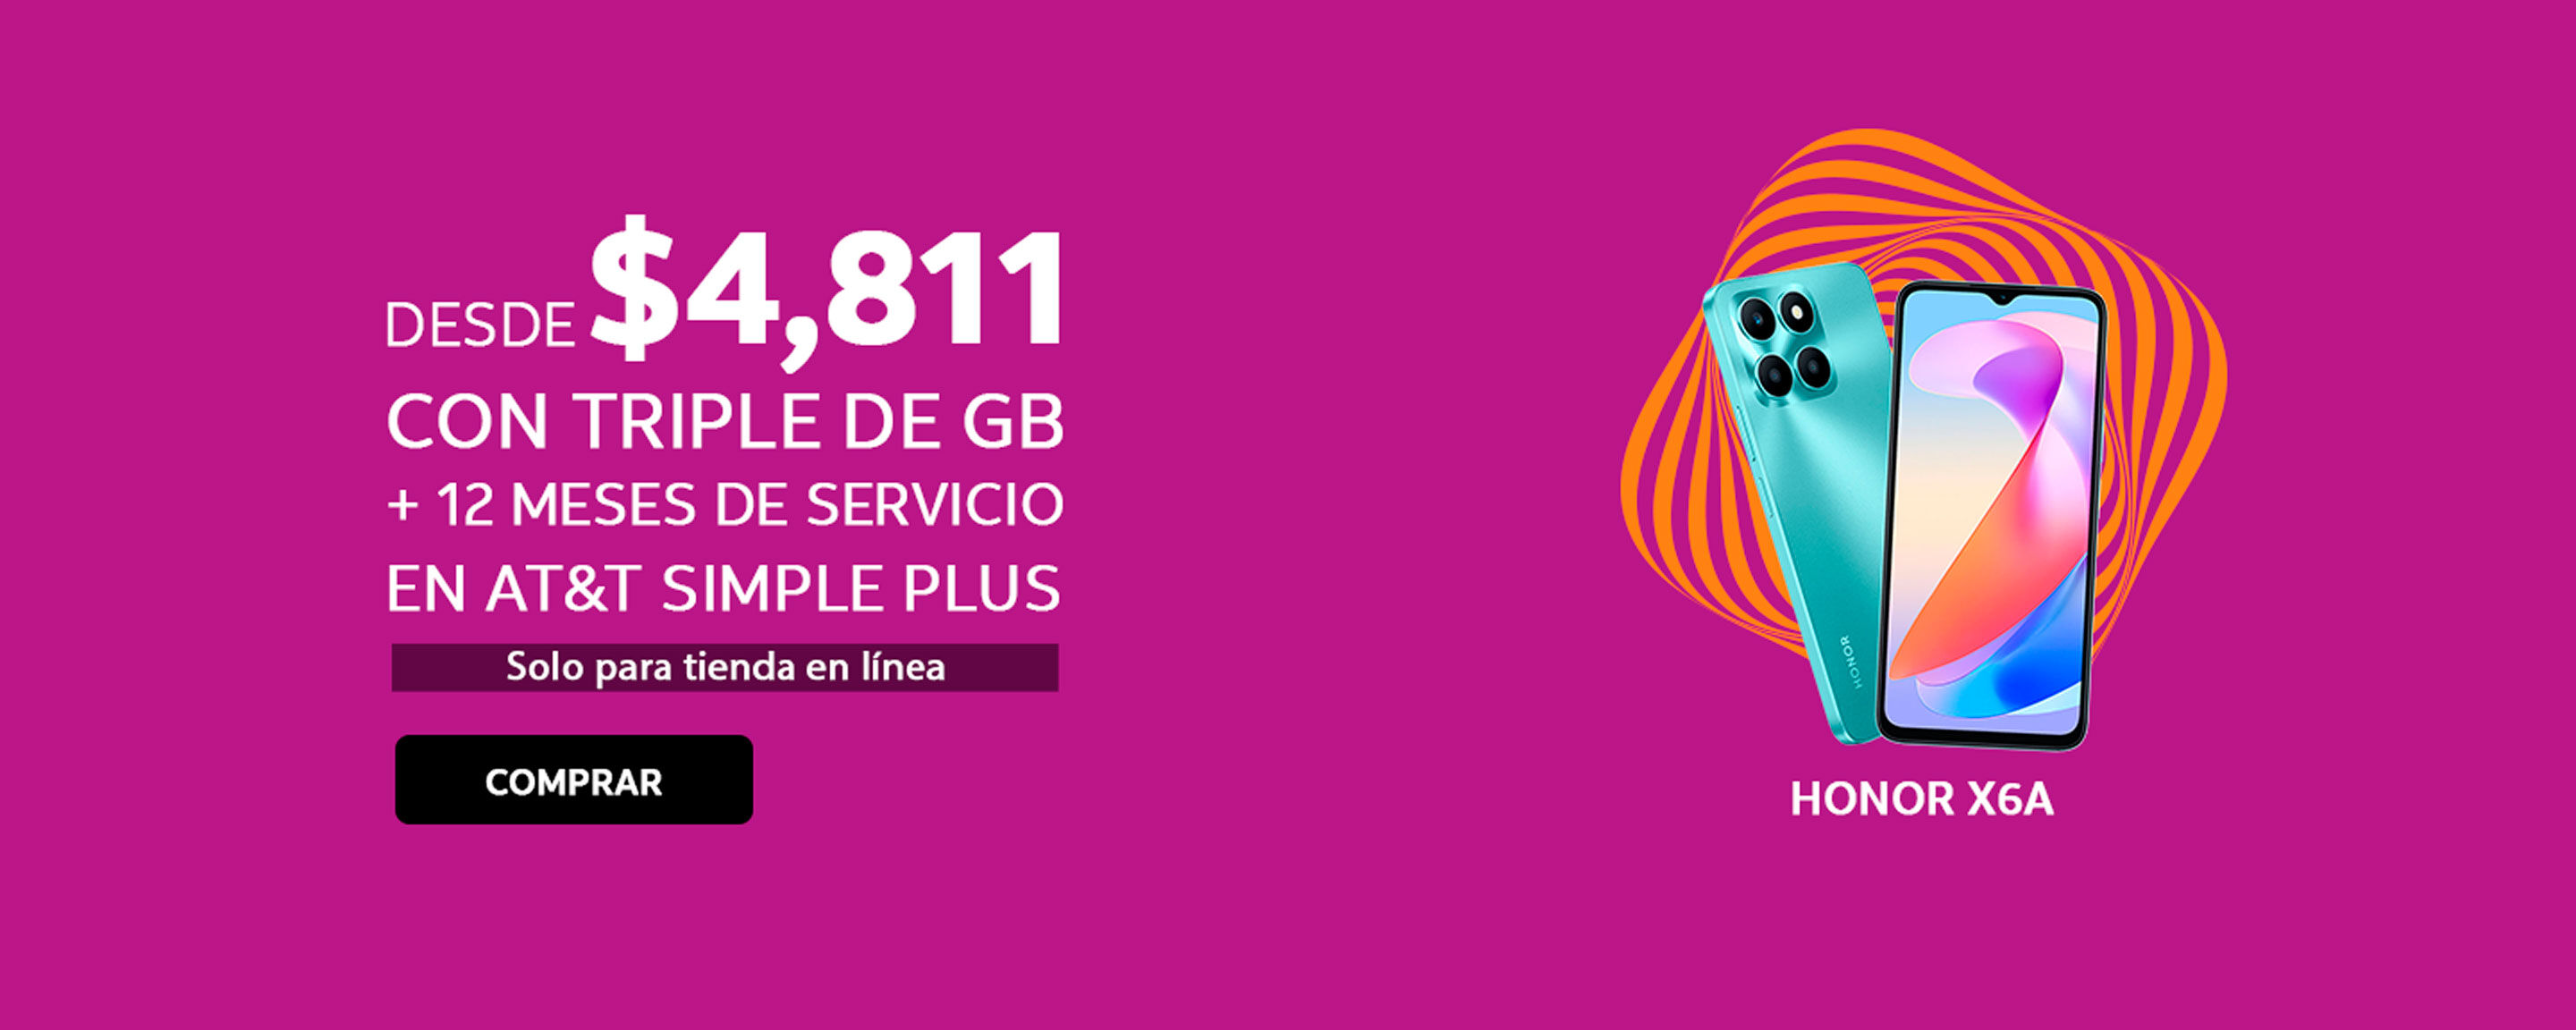 Honor X6A DESDE $ 4, 811 CON TRIPLE DE GB + 12 MESES DE SERVICIO EN AT&T SIMPLE PLUS